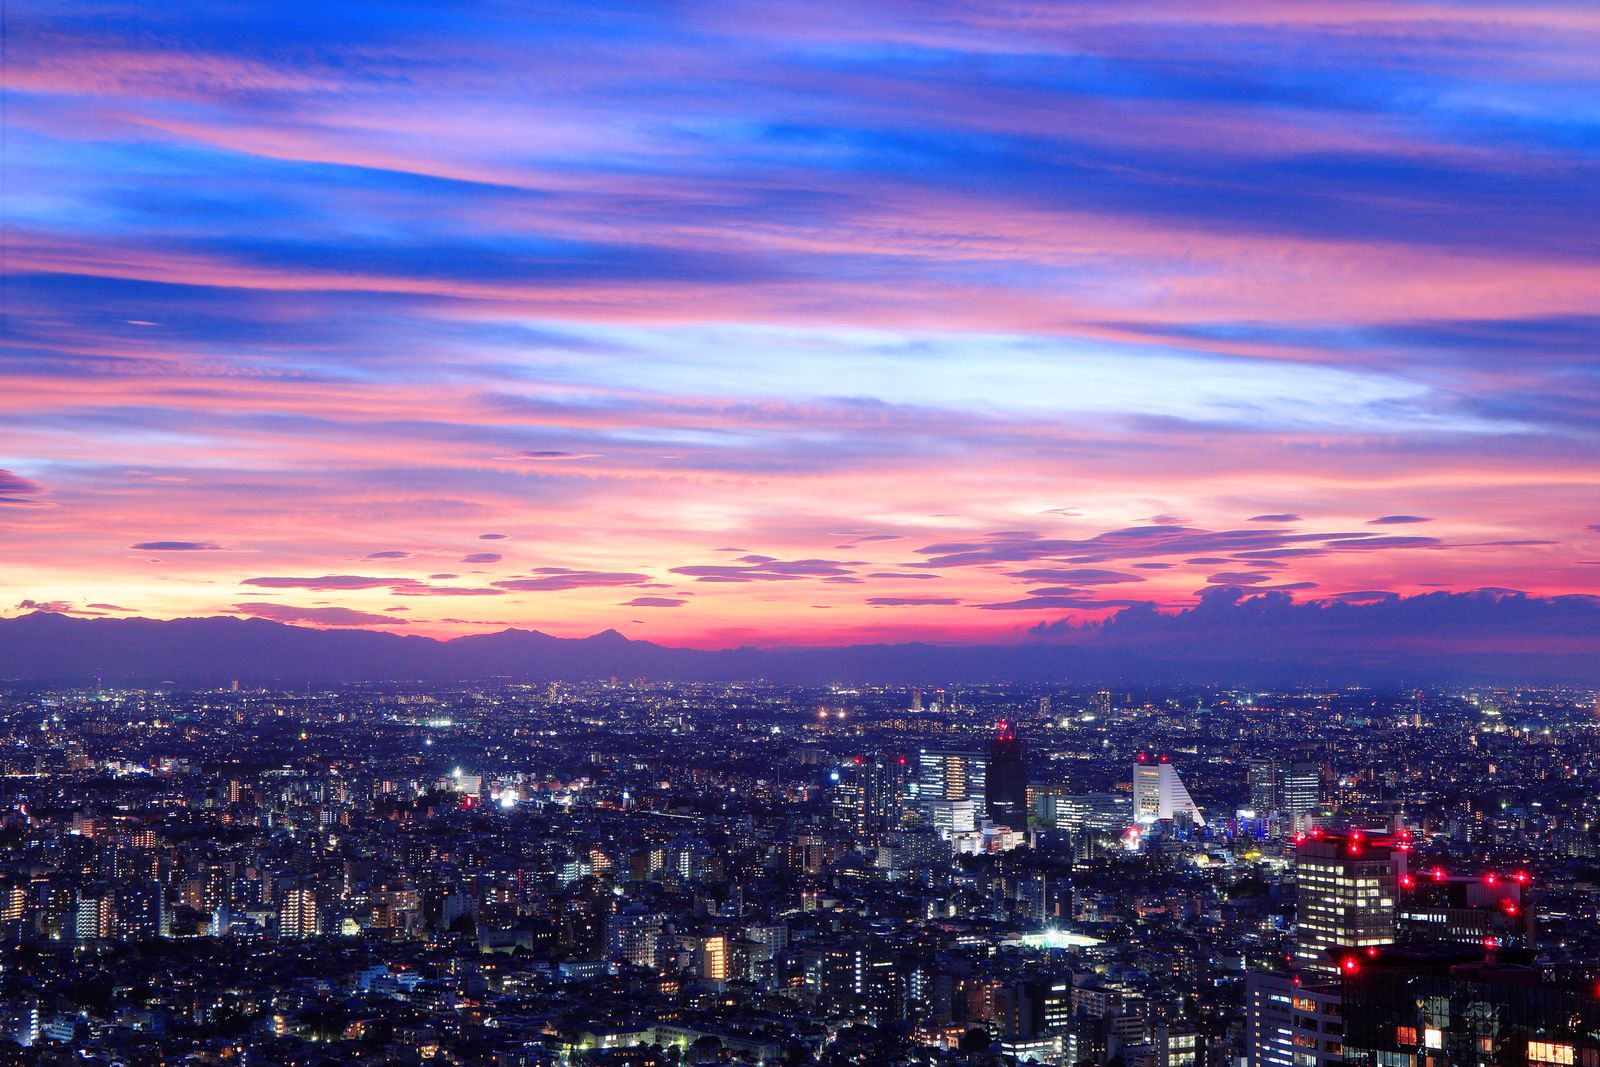 デートにおすすめ新宿の夜景 無料で楽しめるスポット7選 Retrip リトリップ